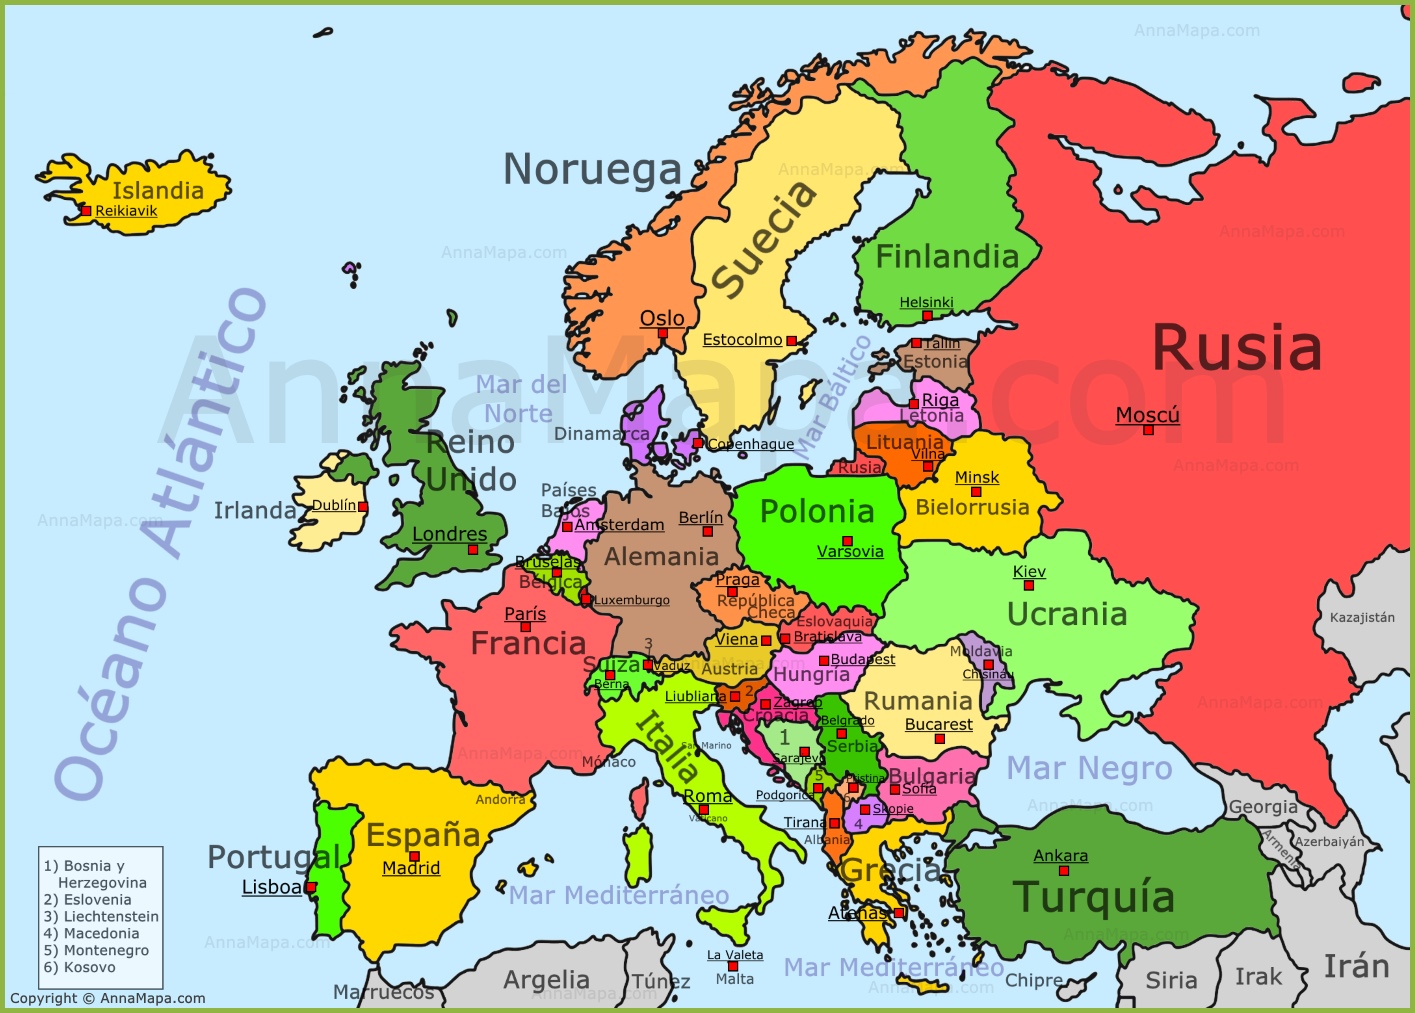 EL RINCÓN DE ANTONIO: Completar el Mapa Politico de Europa